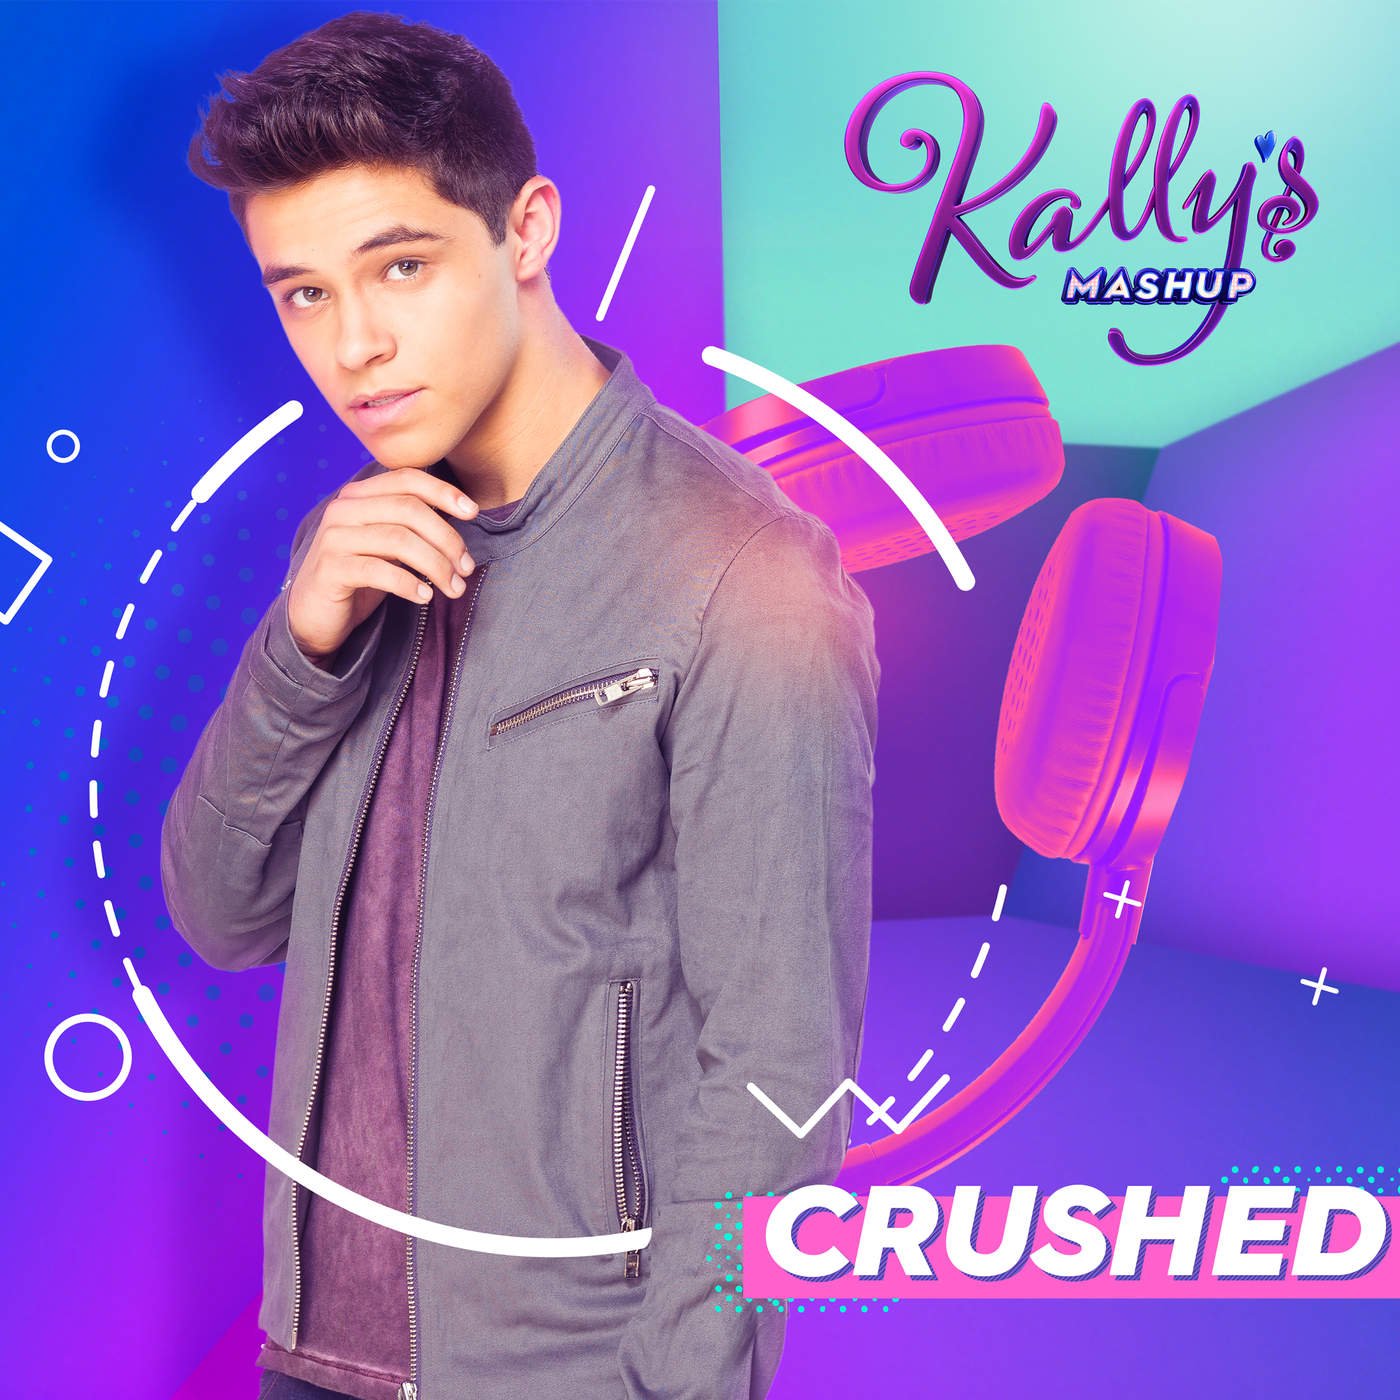 Crushed — KALLY'S Mashup Cast | Last.fm